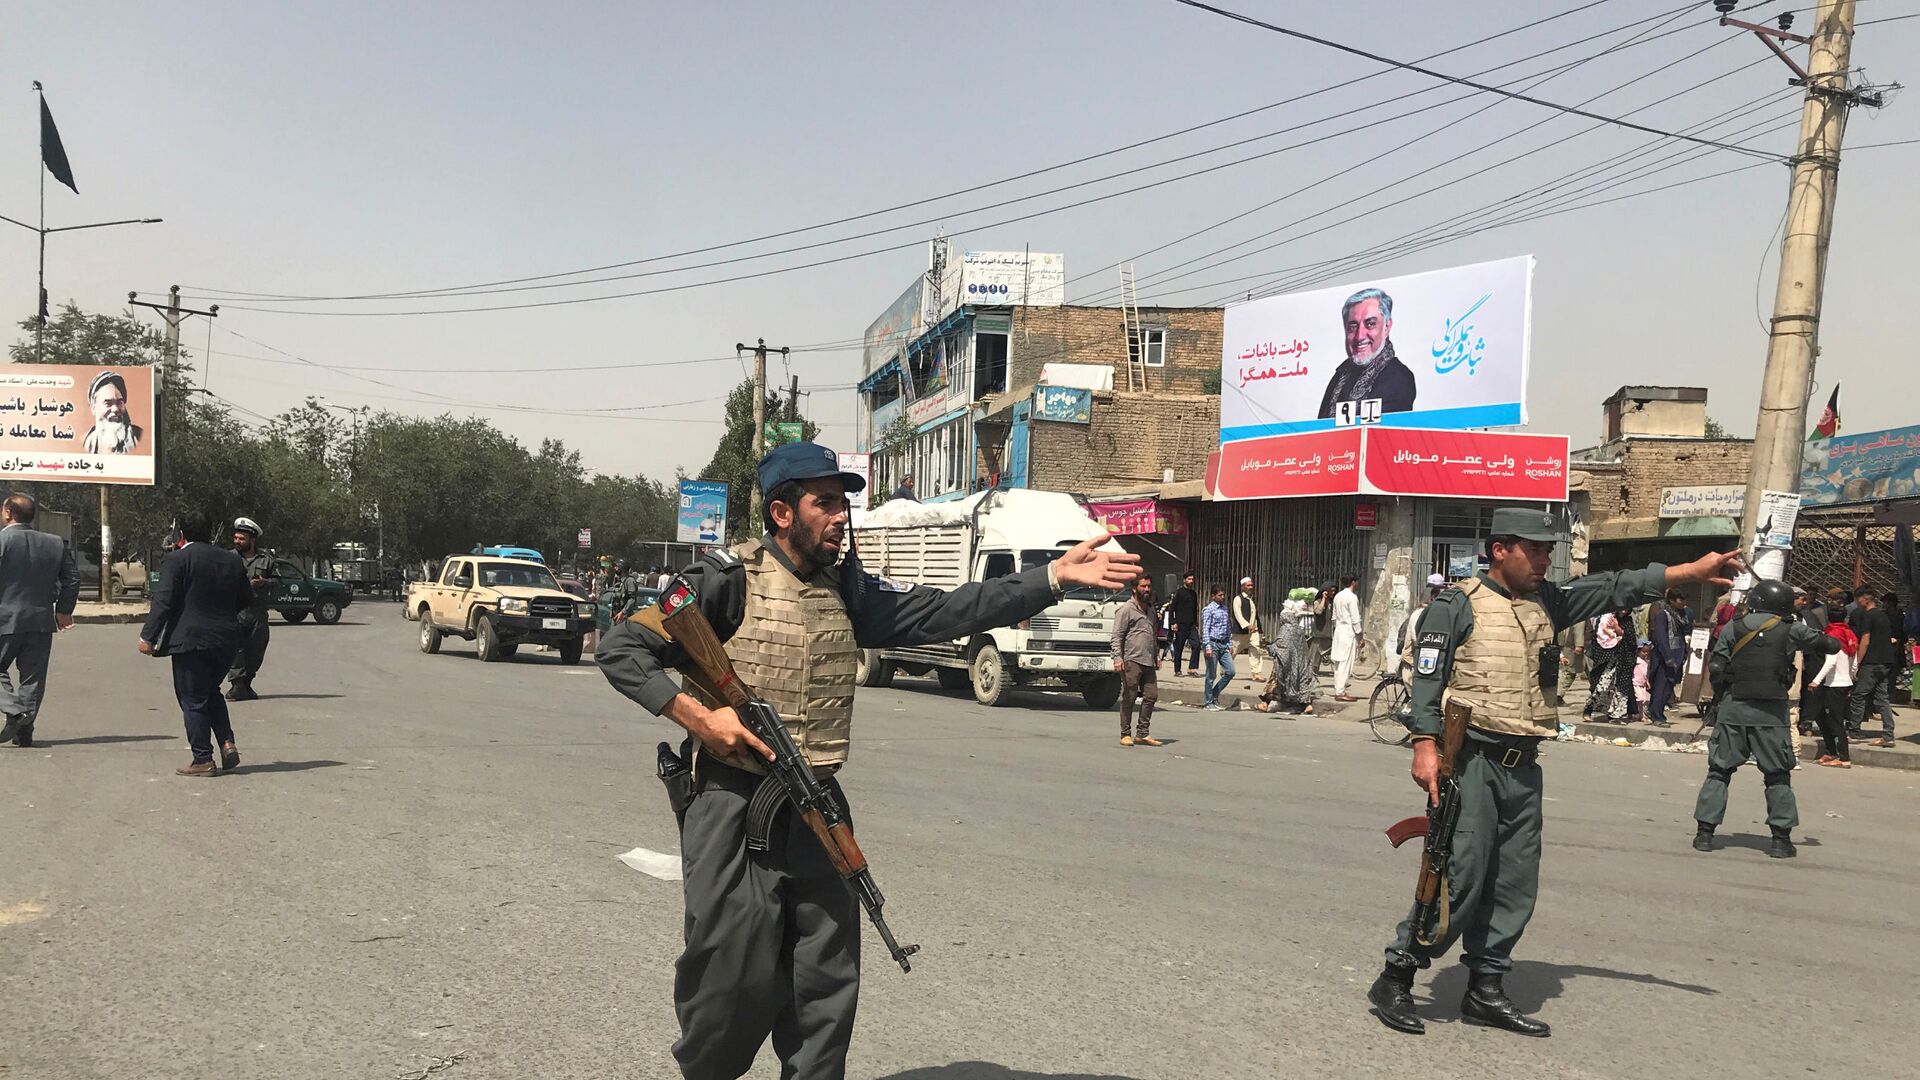 Полицейские возле места взрыва в Кабуле, Афганистан. 7 августа 2019 года - Sputnik Таджикистан, 1920, 13.04.2021